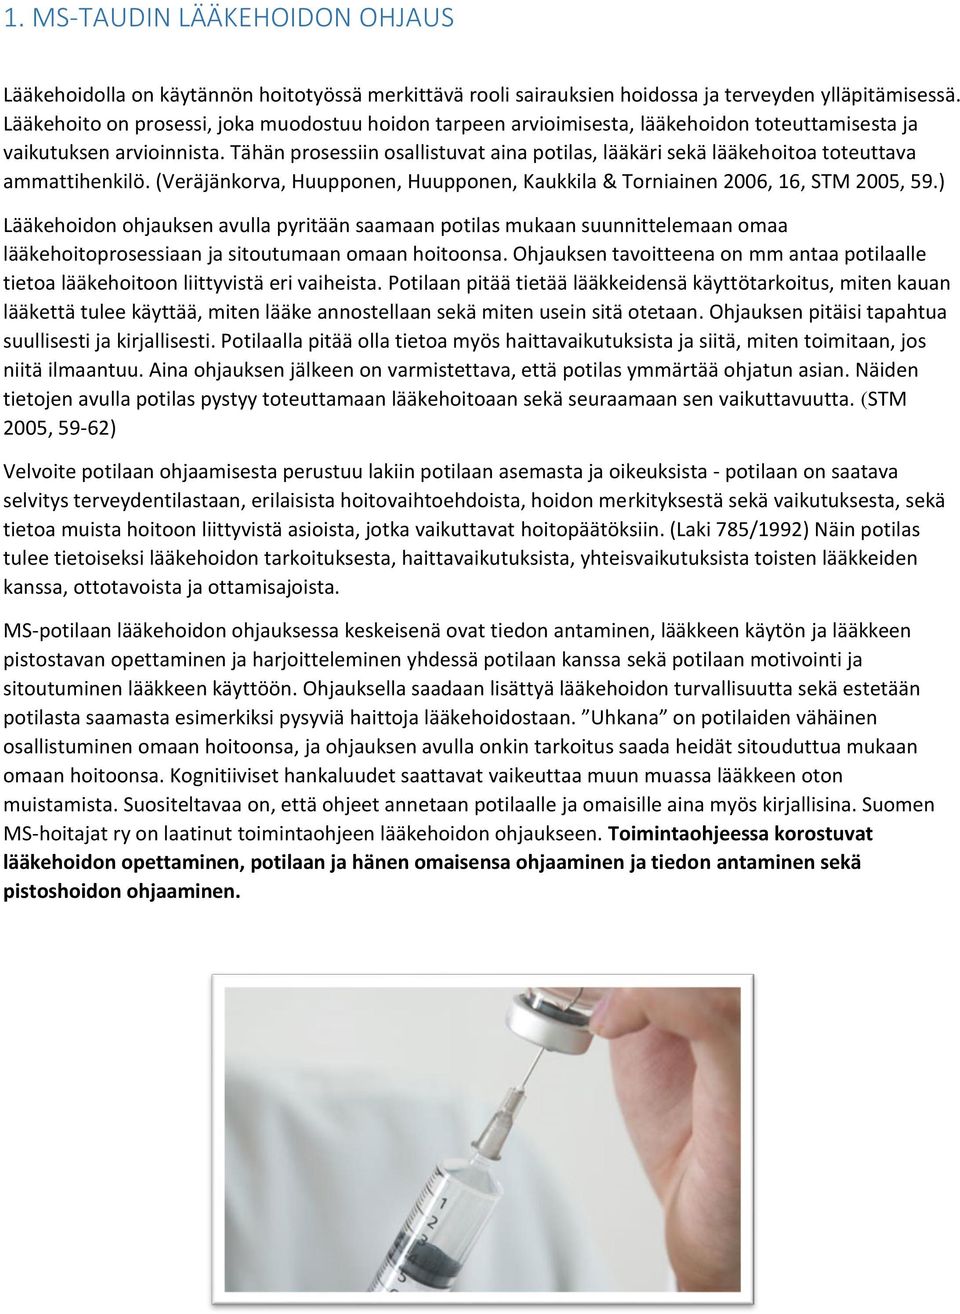 Tähän prosessiin osallistuvat aina potilas, lääkäri sekä lääkehoitoa toteuttava ammattihenkilö. (Veräjänkorva, Huupponen, Huupponen, Kaukkila & Torniainen 2006, 16, STM 2005, 59.